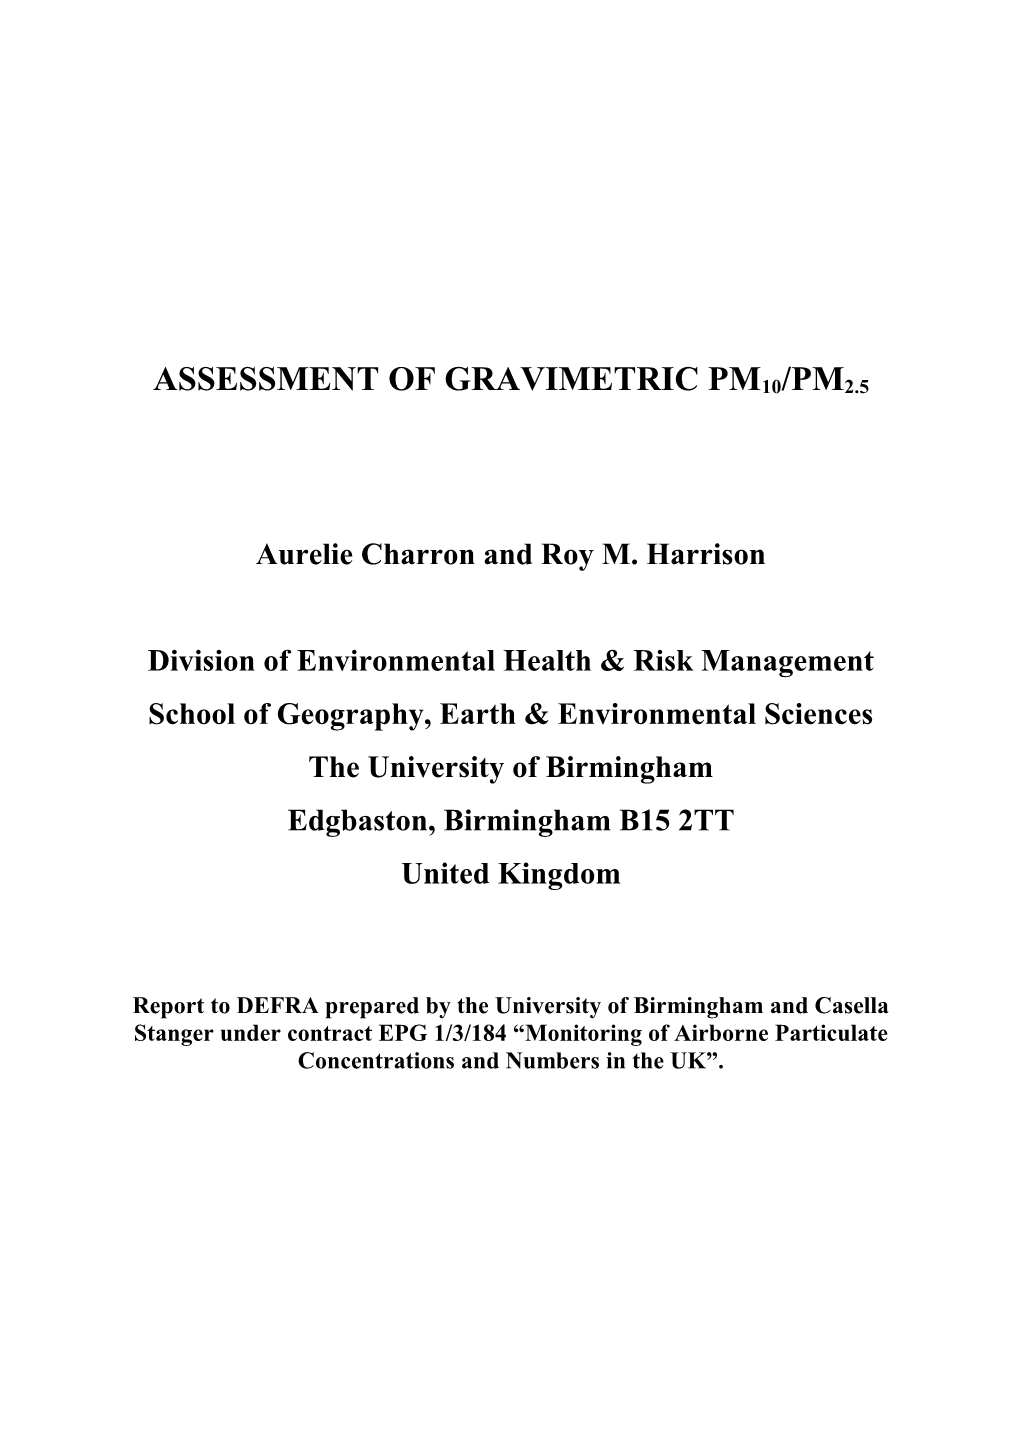 Assessment of Gravimetric PM10/PM2